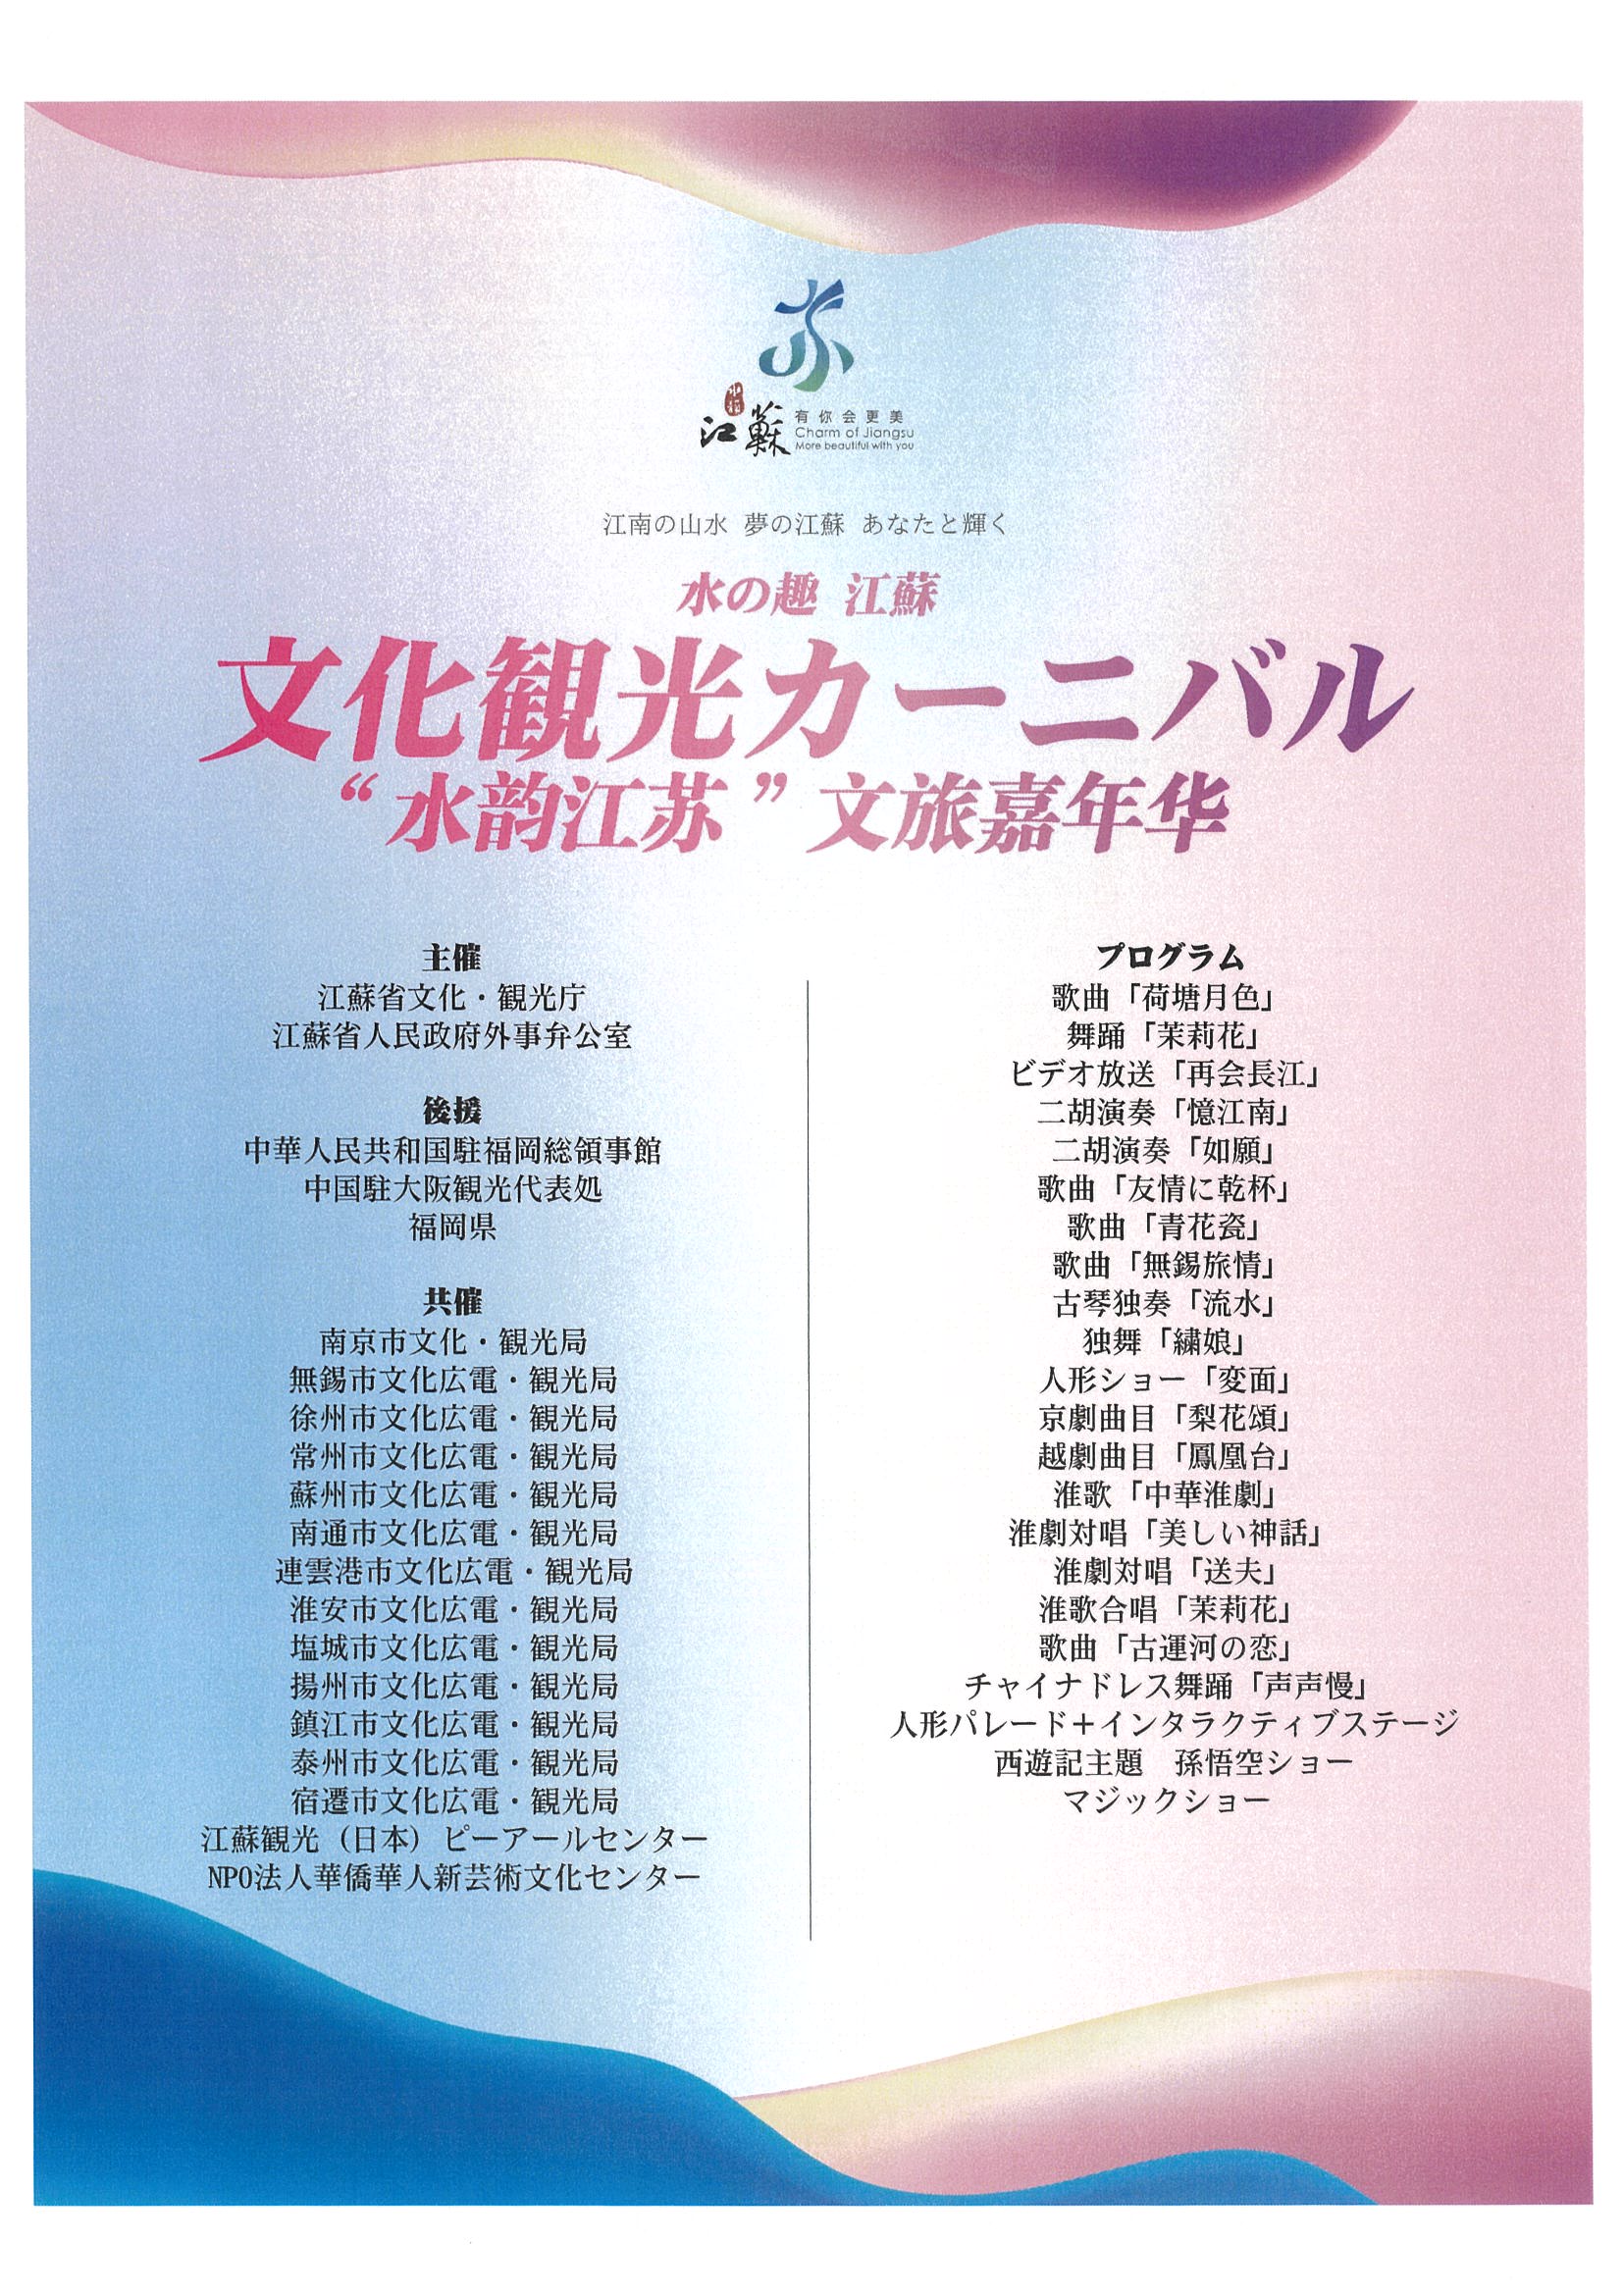 「水の趣　江蘇文化観光カーニバル」開催のお知らせ